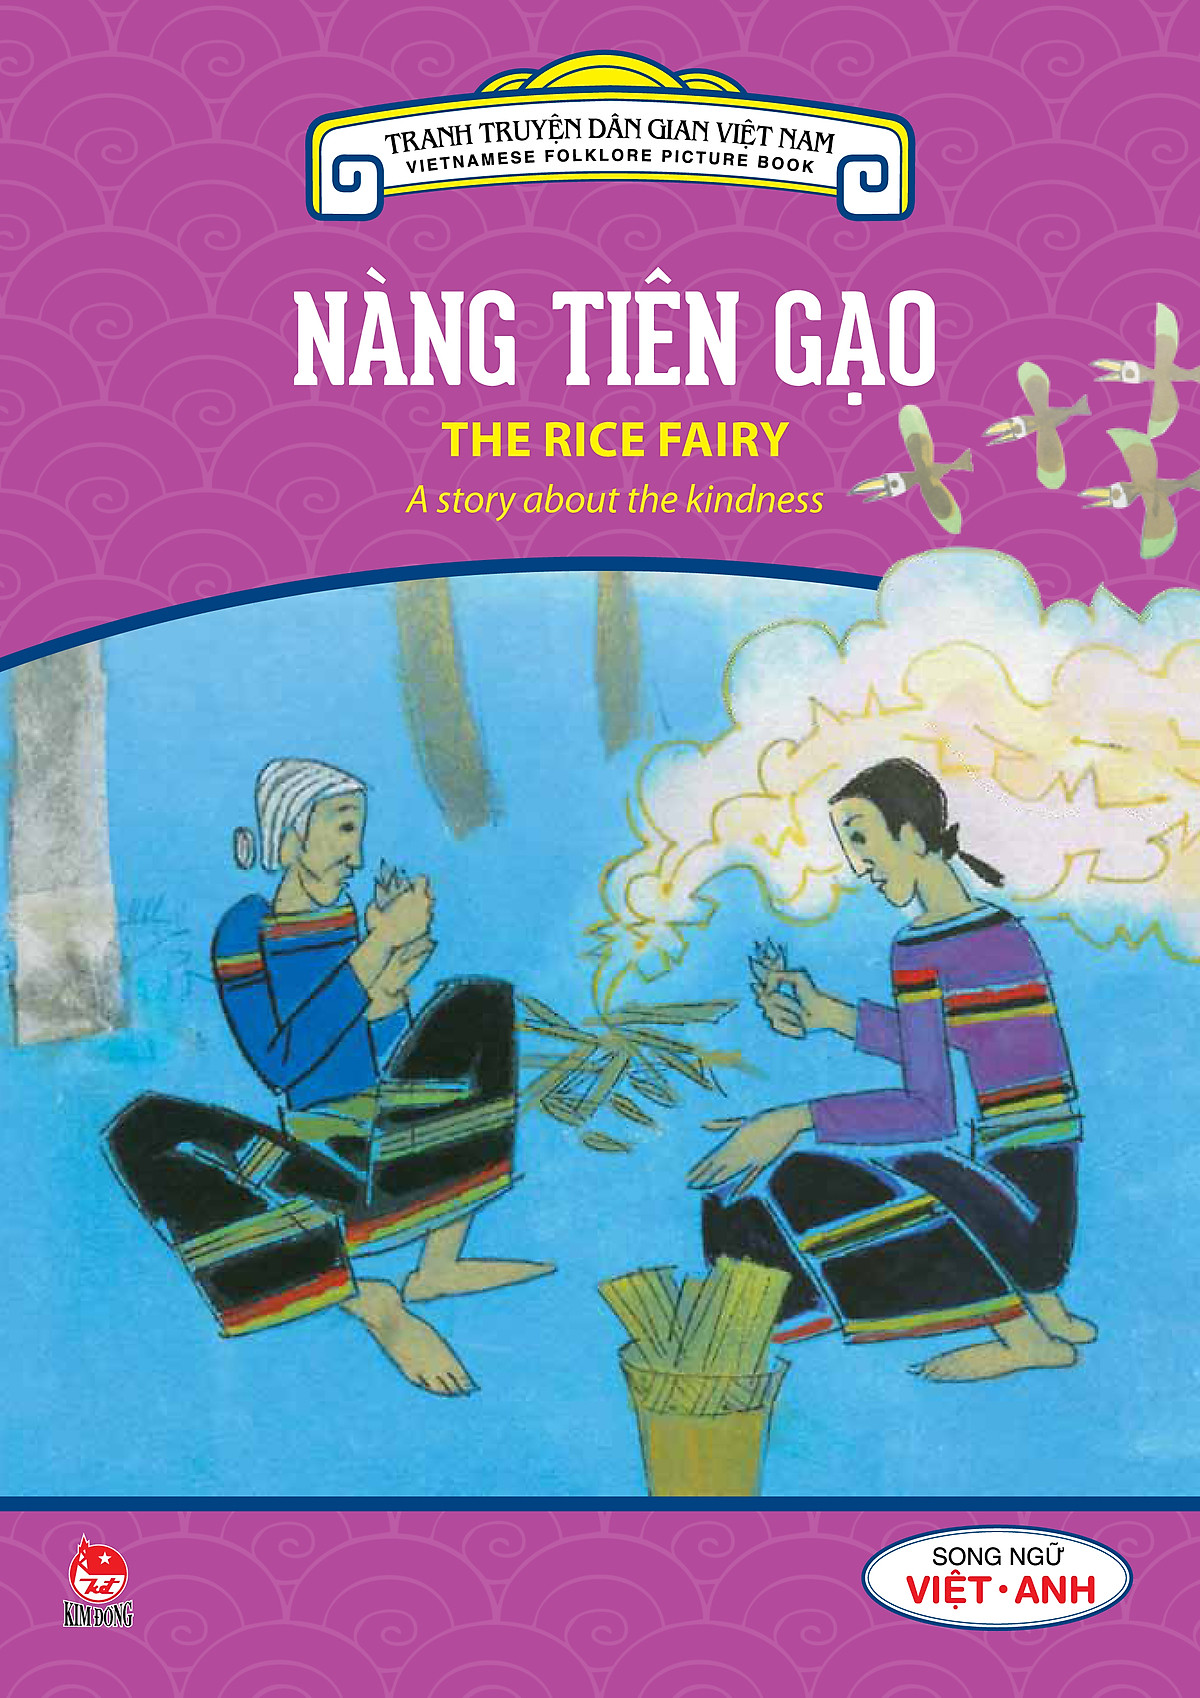 Tranh Truyện Dân Gian Việt Nam - Nàng Tiên Gạo (Song Ngữ Việt - Anh) (2016)